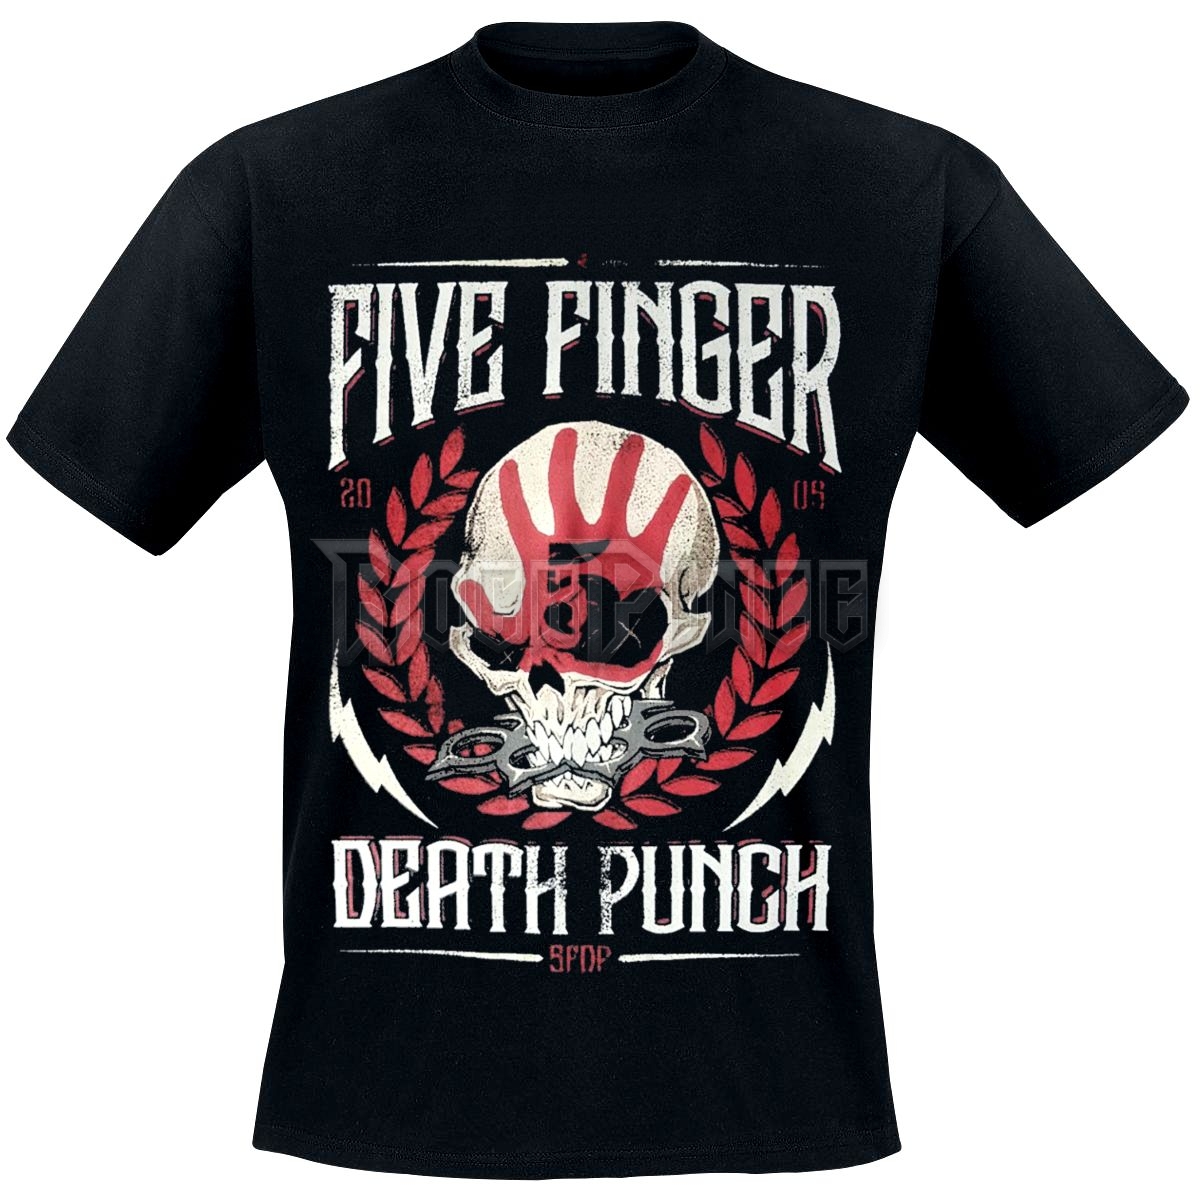 Five Finger Death Punch - LAUREL WREATH - UNISEX PÓLÓ